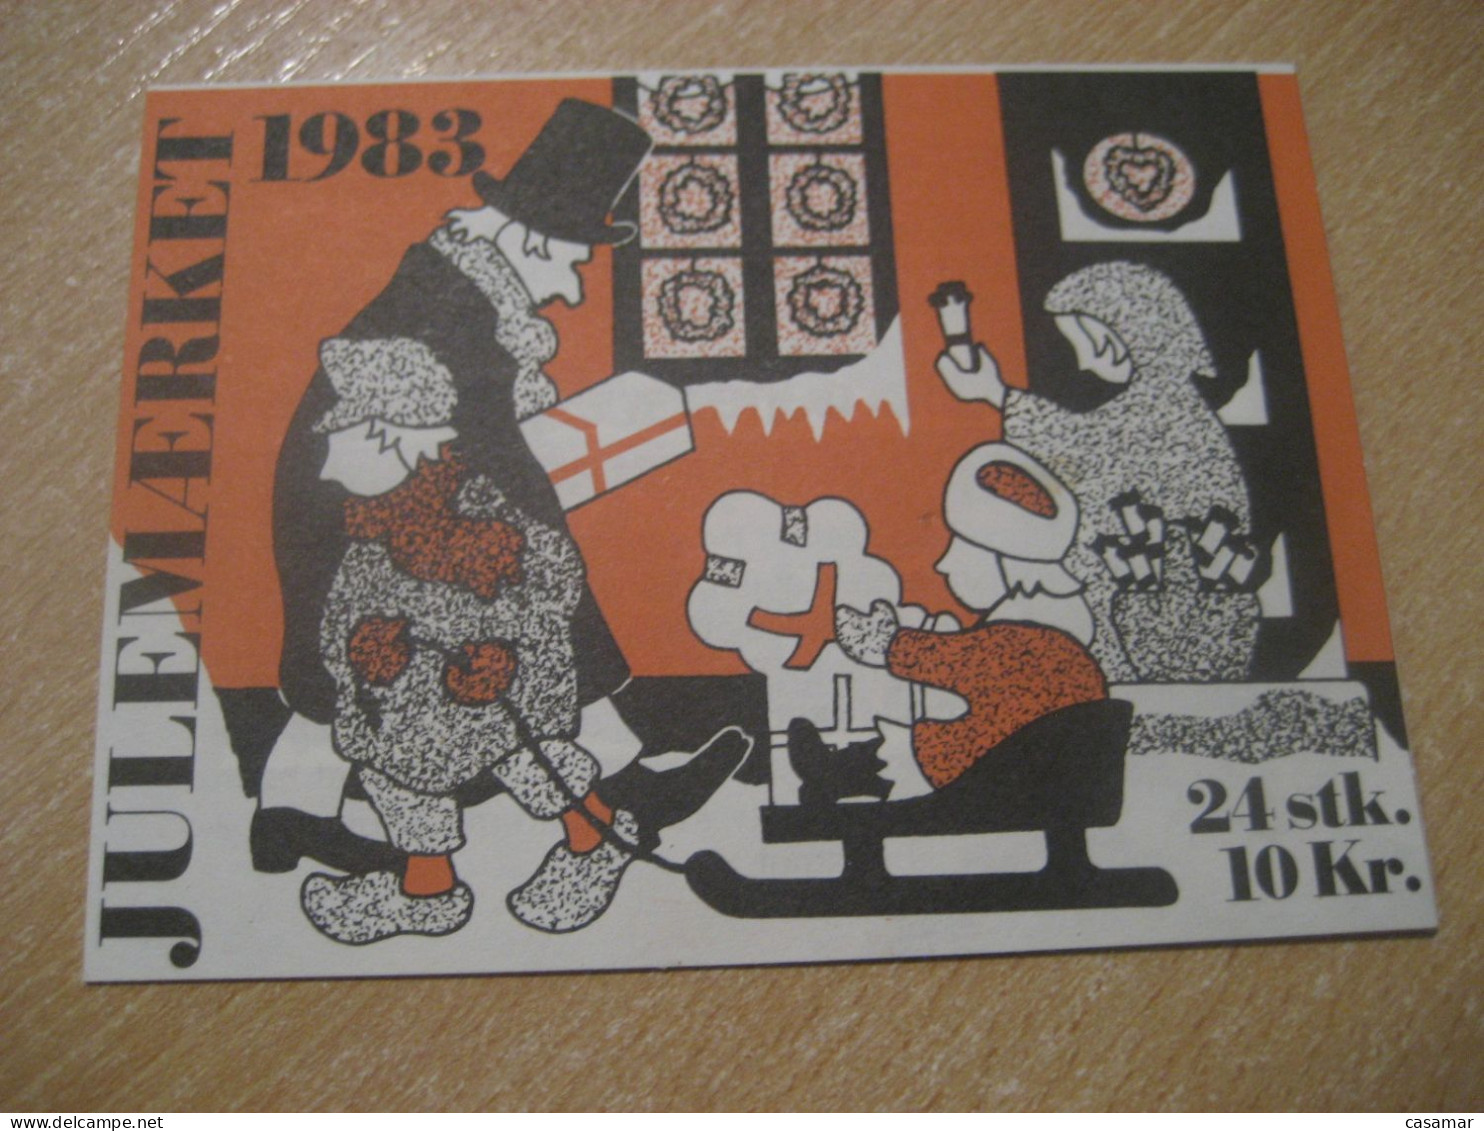 DENMARK 1983 Sled Sleigh Julemaerket Booklet Christmas 24 Poster Stamp Vignette (3 Sheet X 8 Label) - Carnets